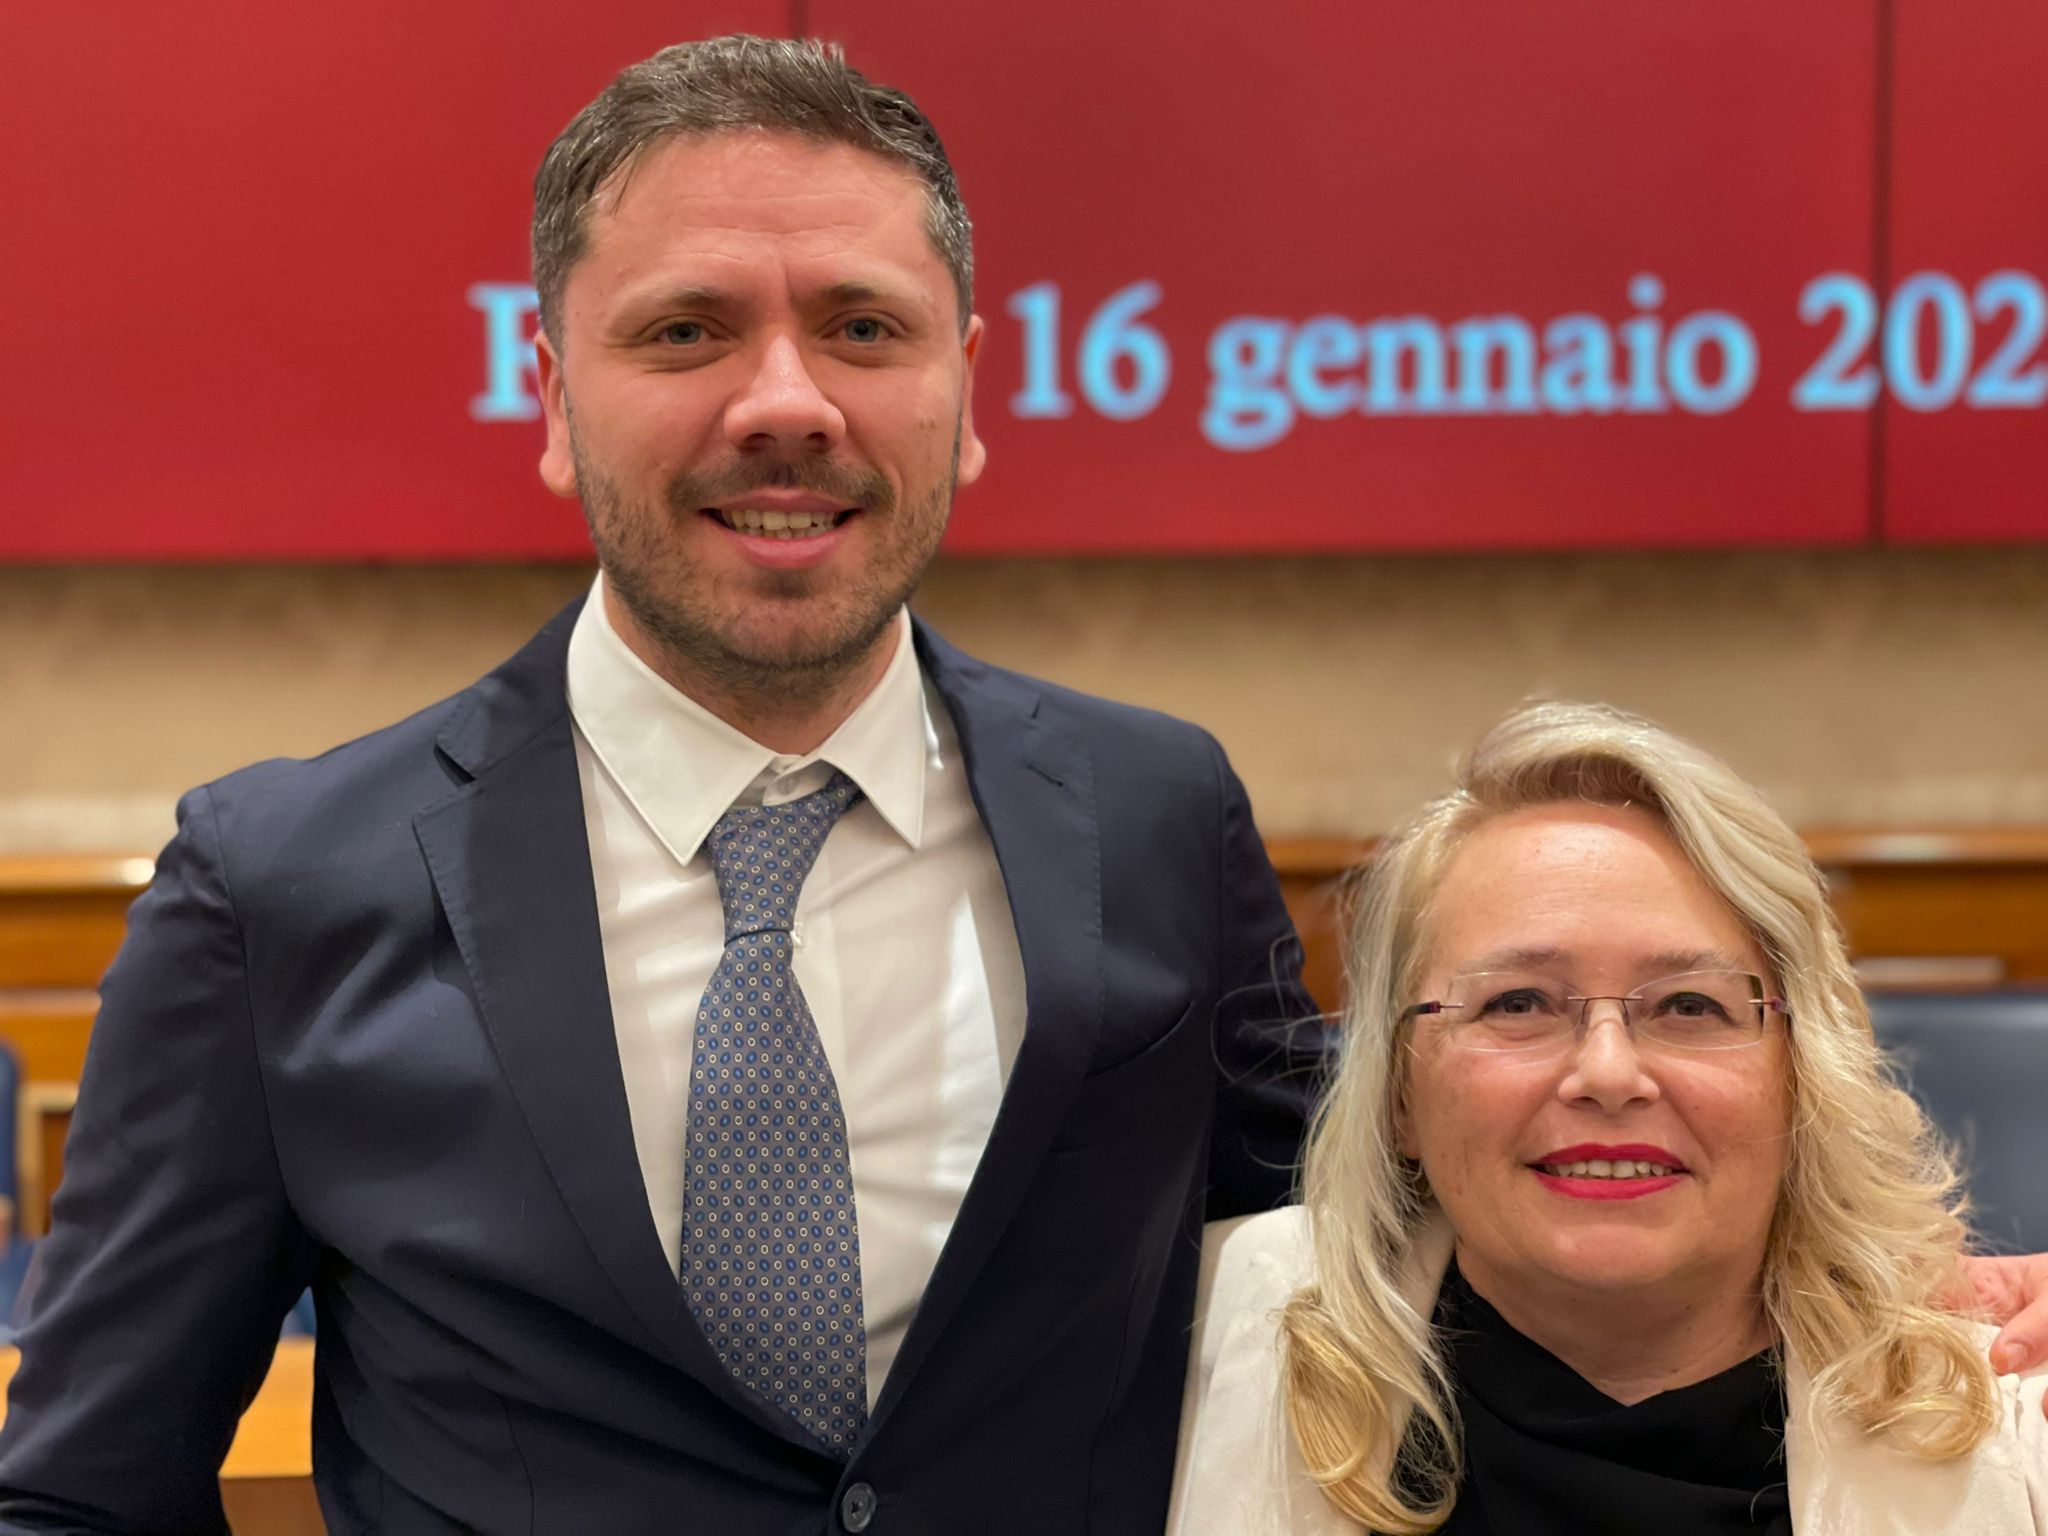 Il direttore artistico Gianluca Scarpa e la presidente Donatella Cocchini